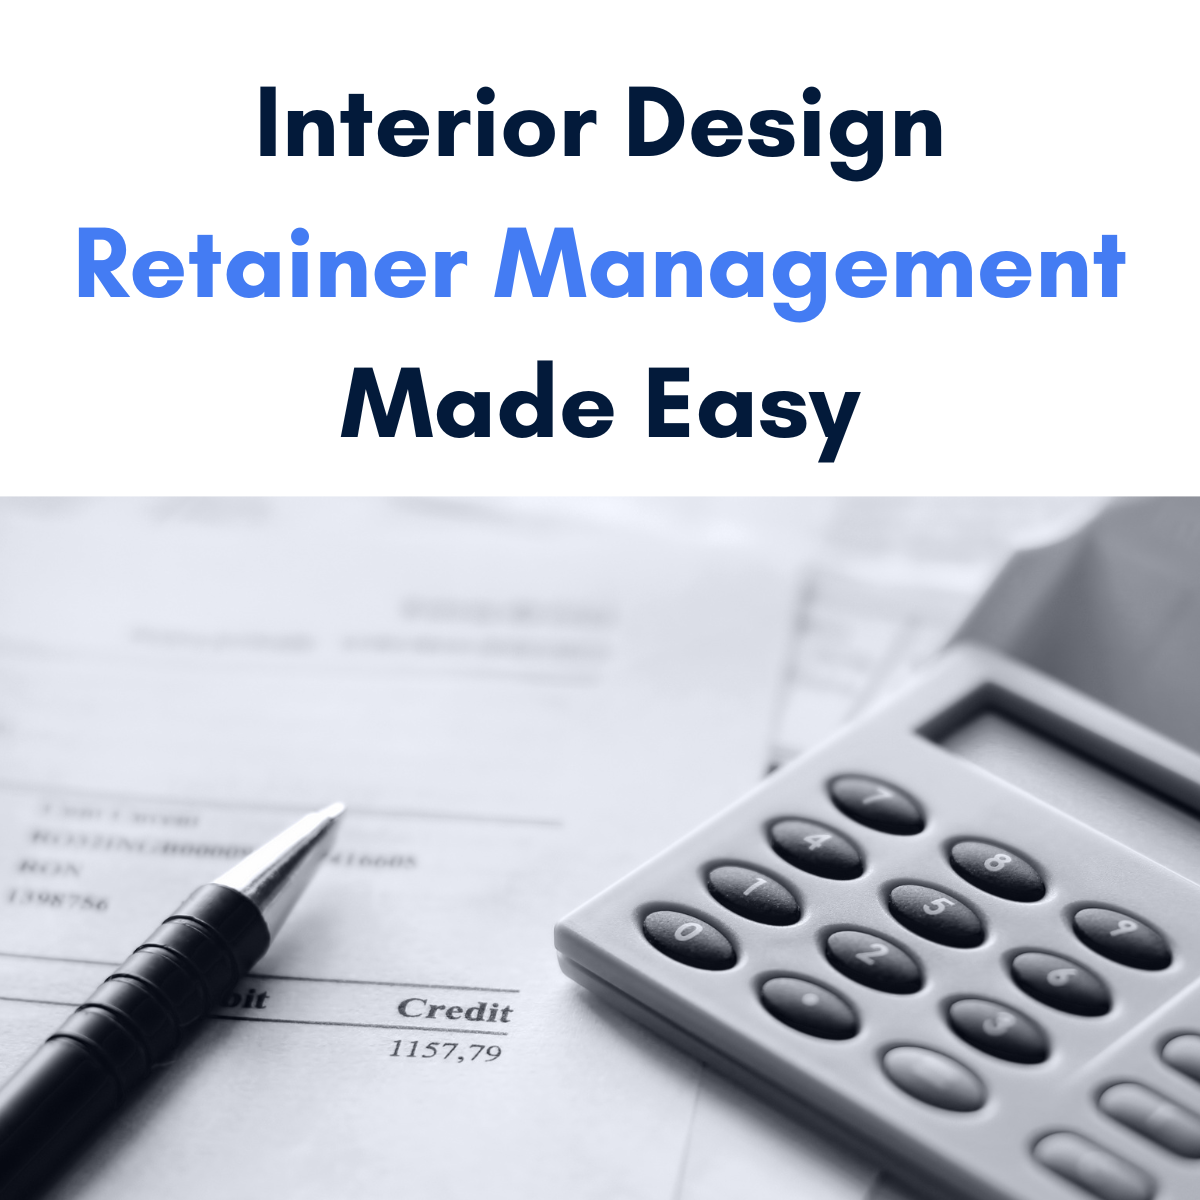 Interior design retainer management